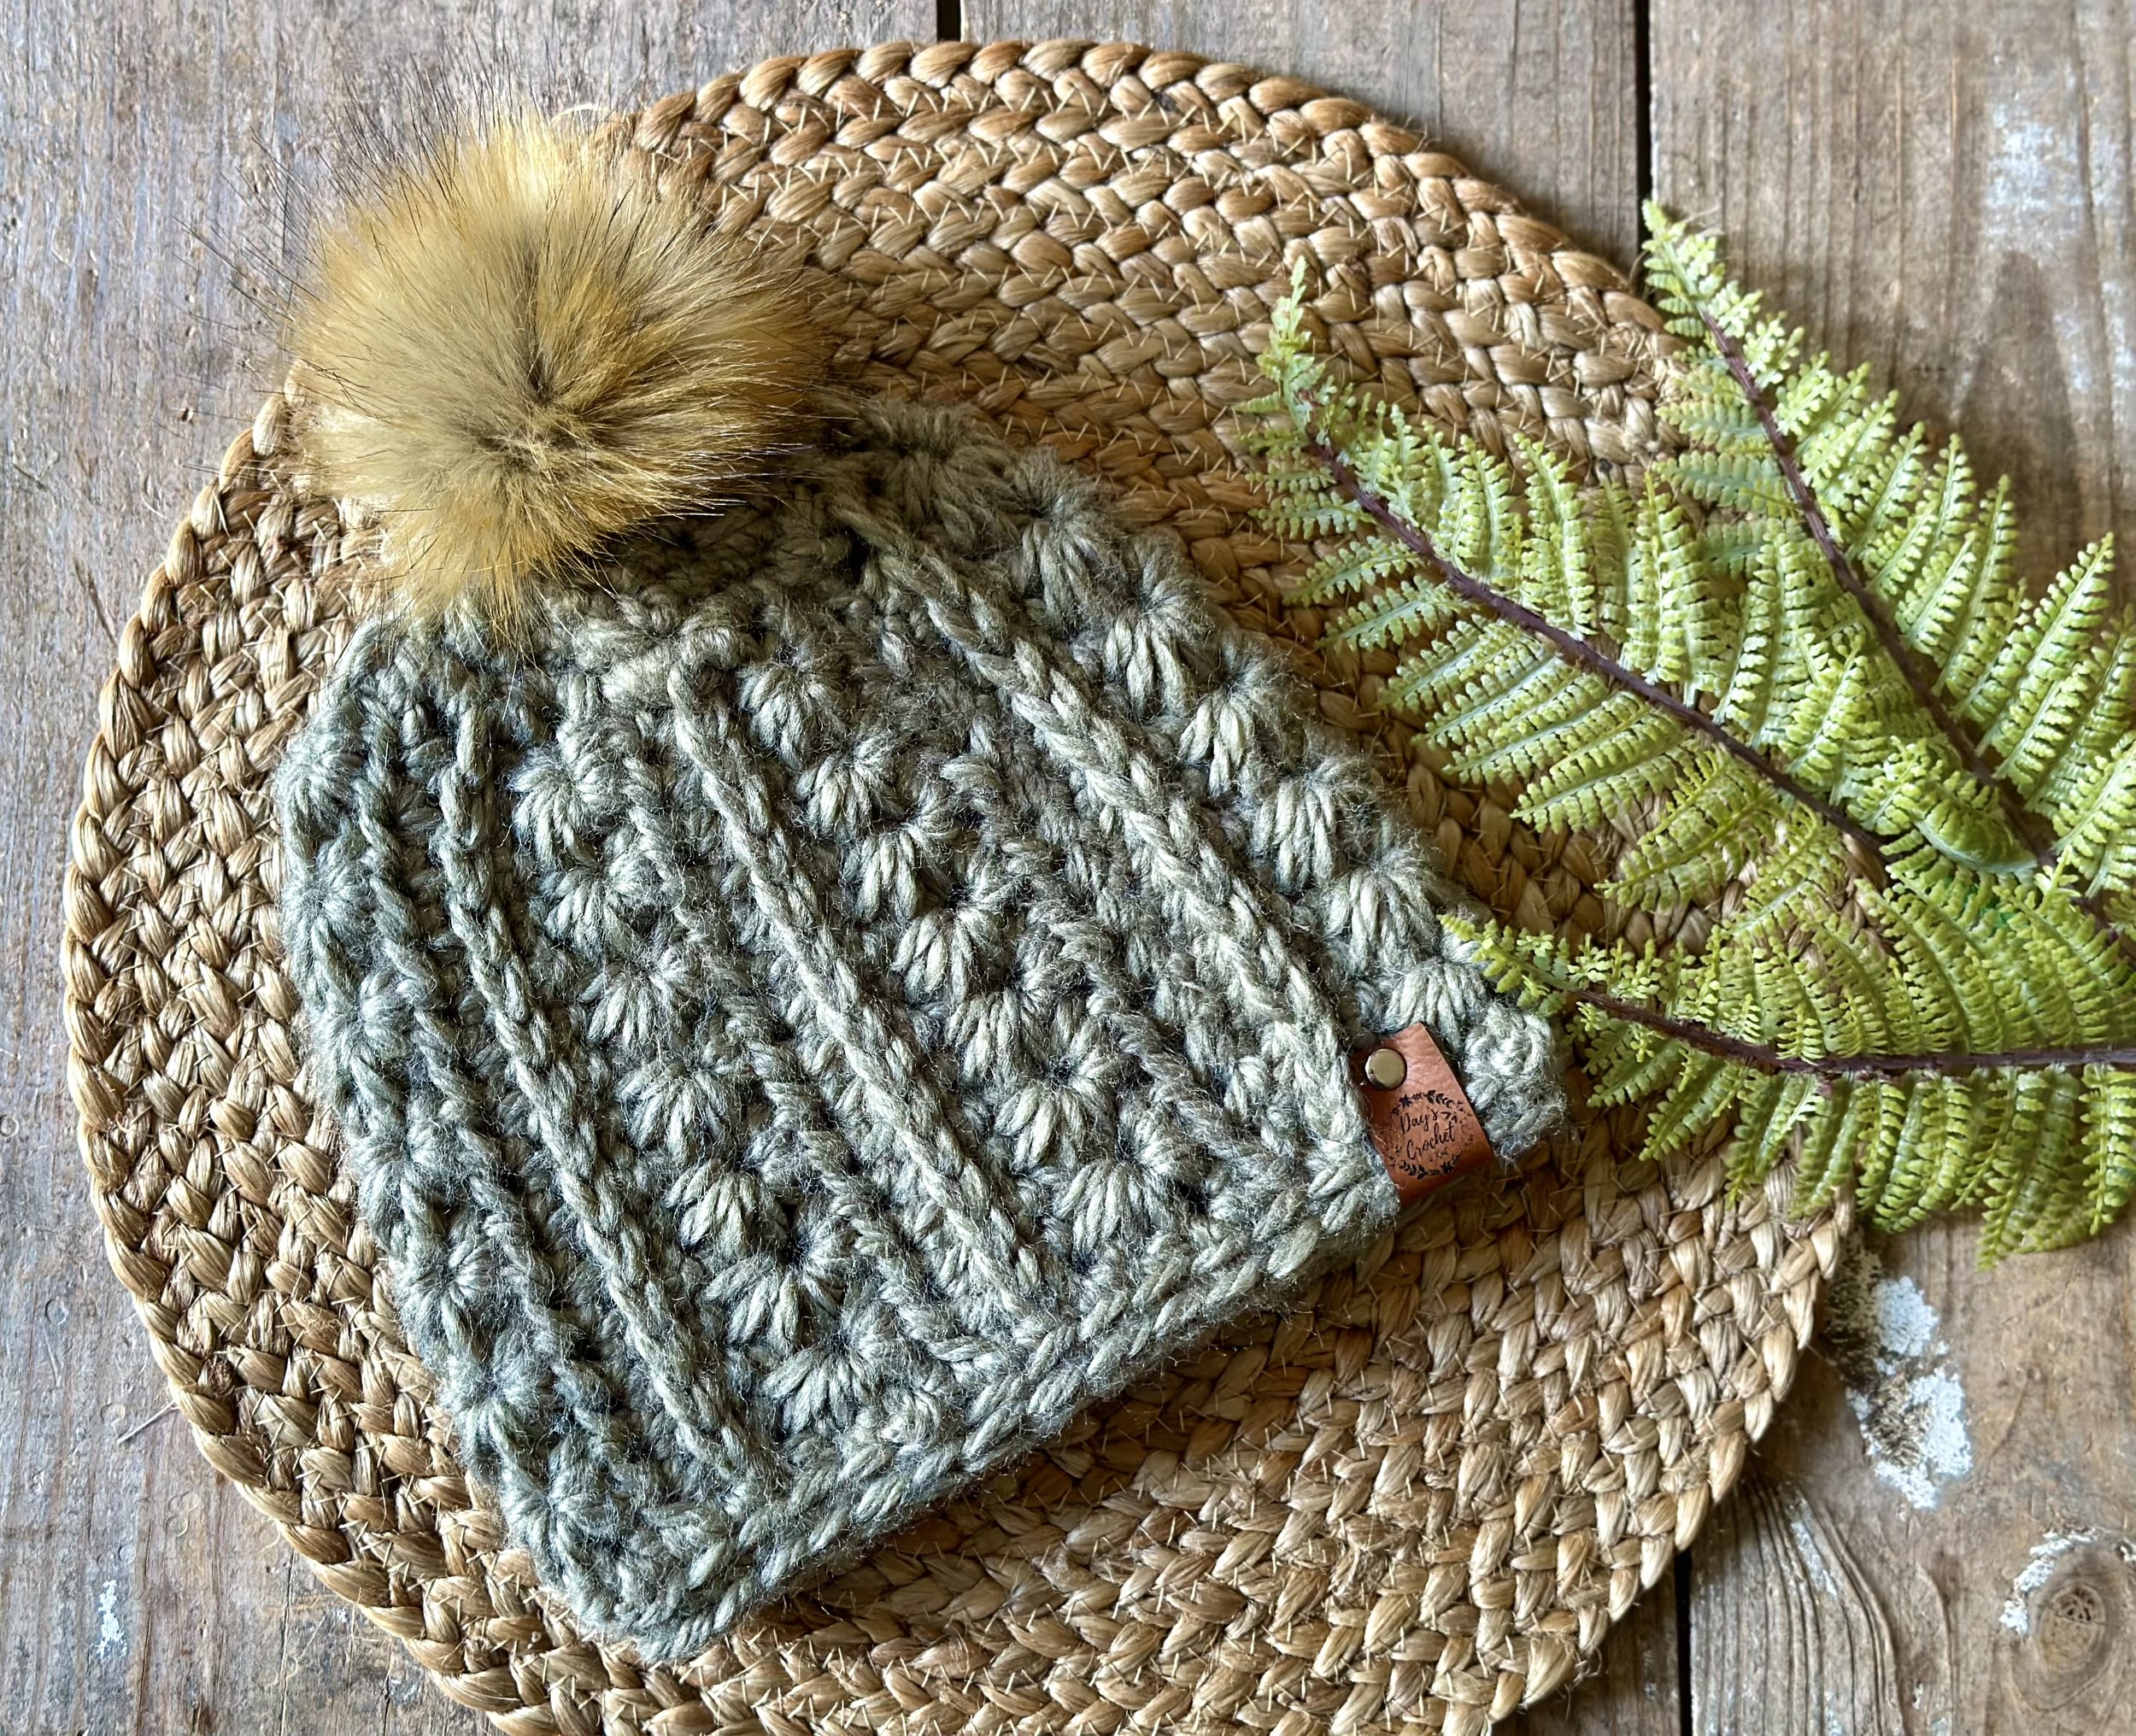 Time For Oats & Honey - New Crochet Hat Kit! — Stitch & Hustle